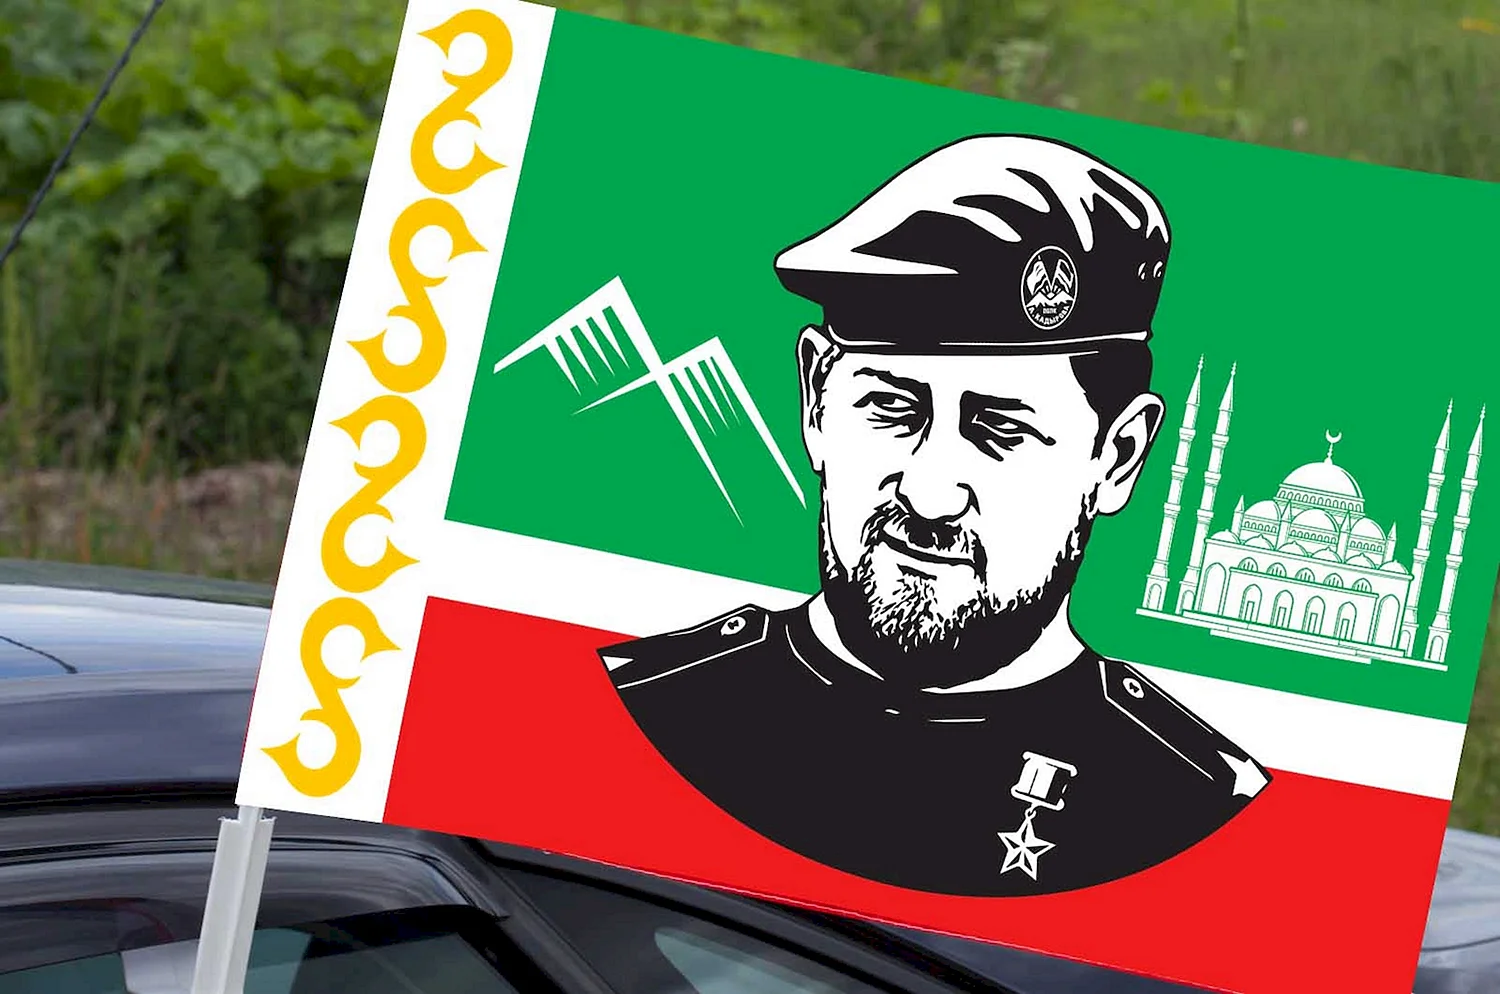 Флаг Чечни Ахмат